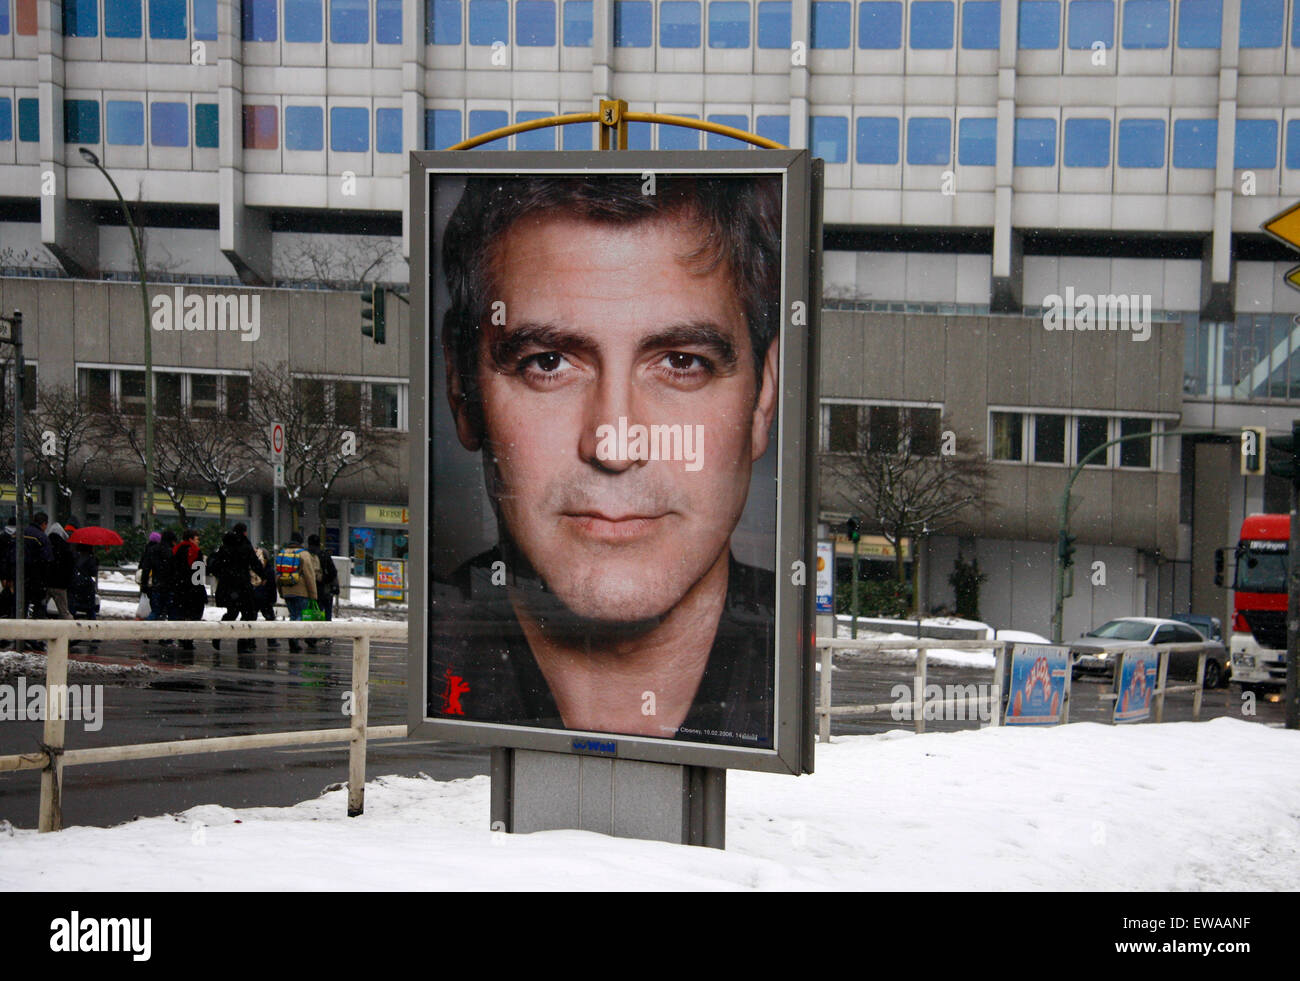 george Clooney - Schauspieler-Portraits im Schnee: Berlinale 2010 - Impressionen,12. Februar 2010, Berlin. Stock Photo